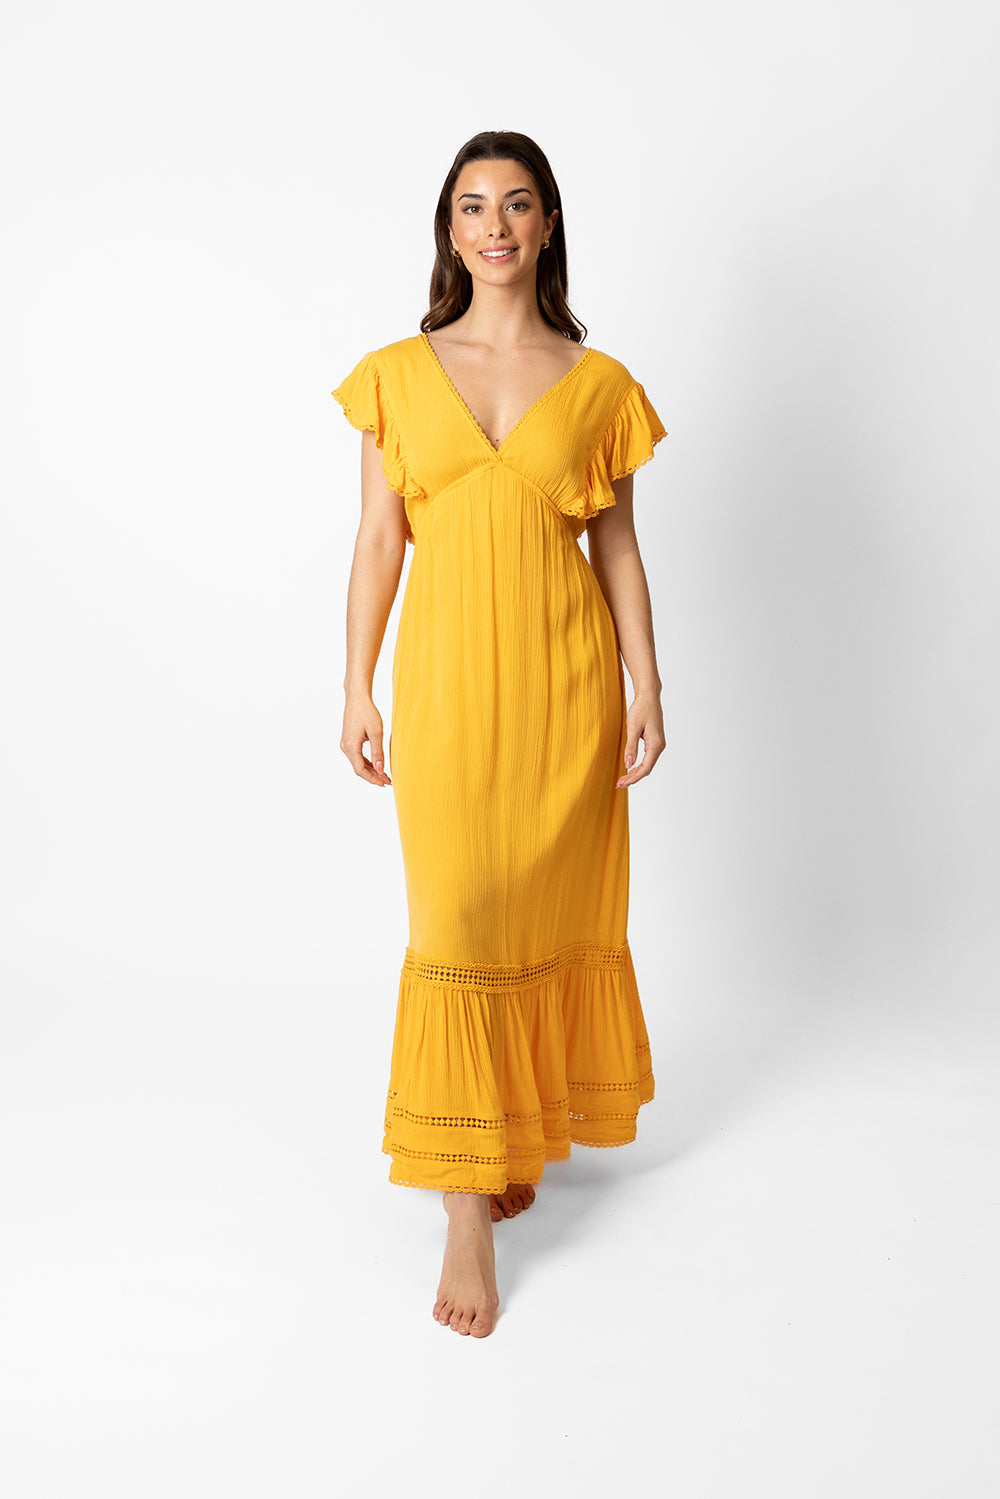 Miami Luxe Ruffle Sleeve Maxi Dress in mango yellow